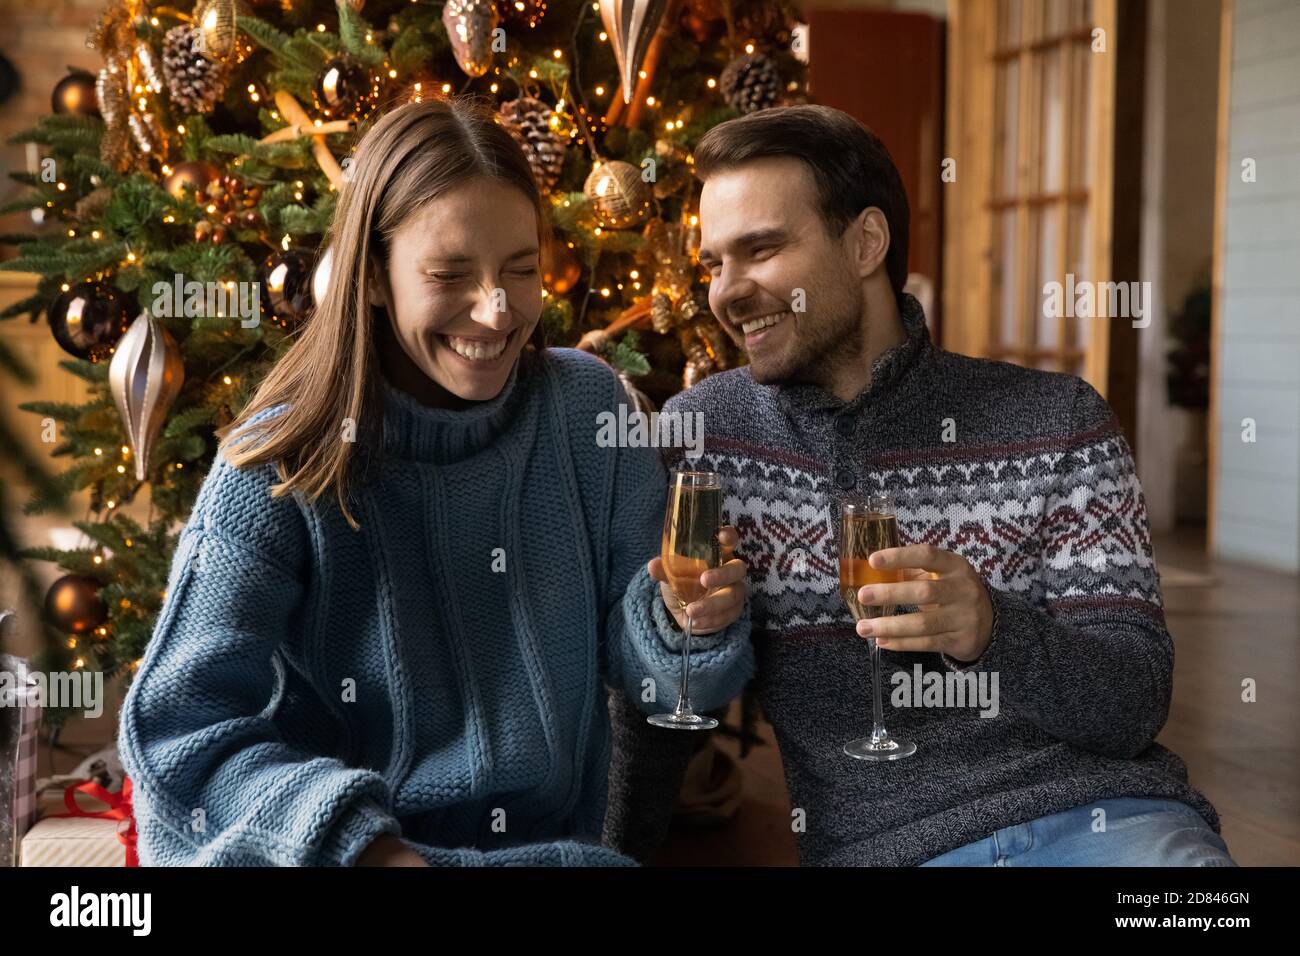 Un couple heureux boit du champagne pour fêter le nouvel an Banque D'Images